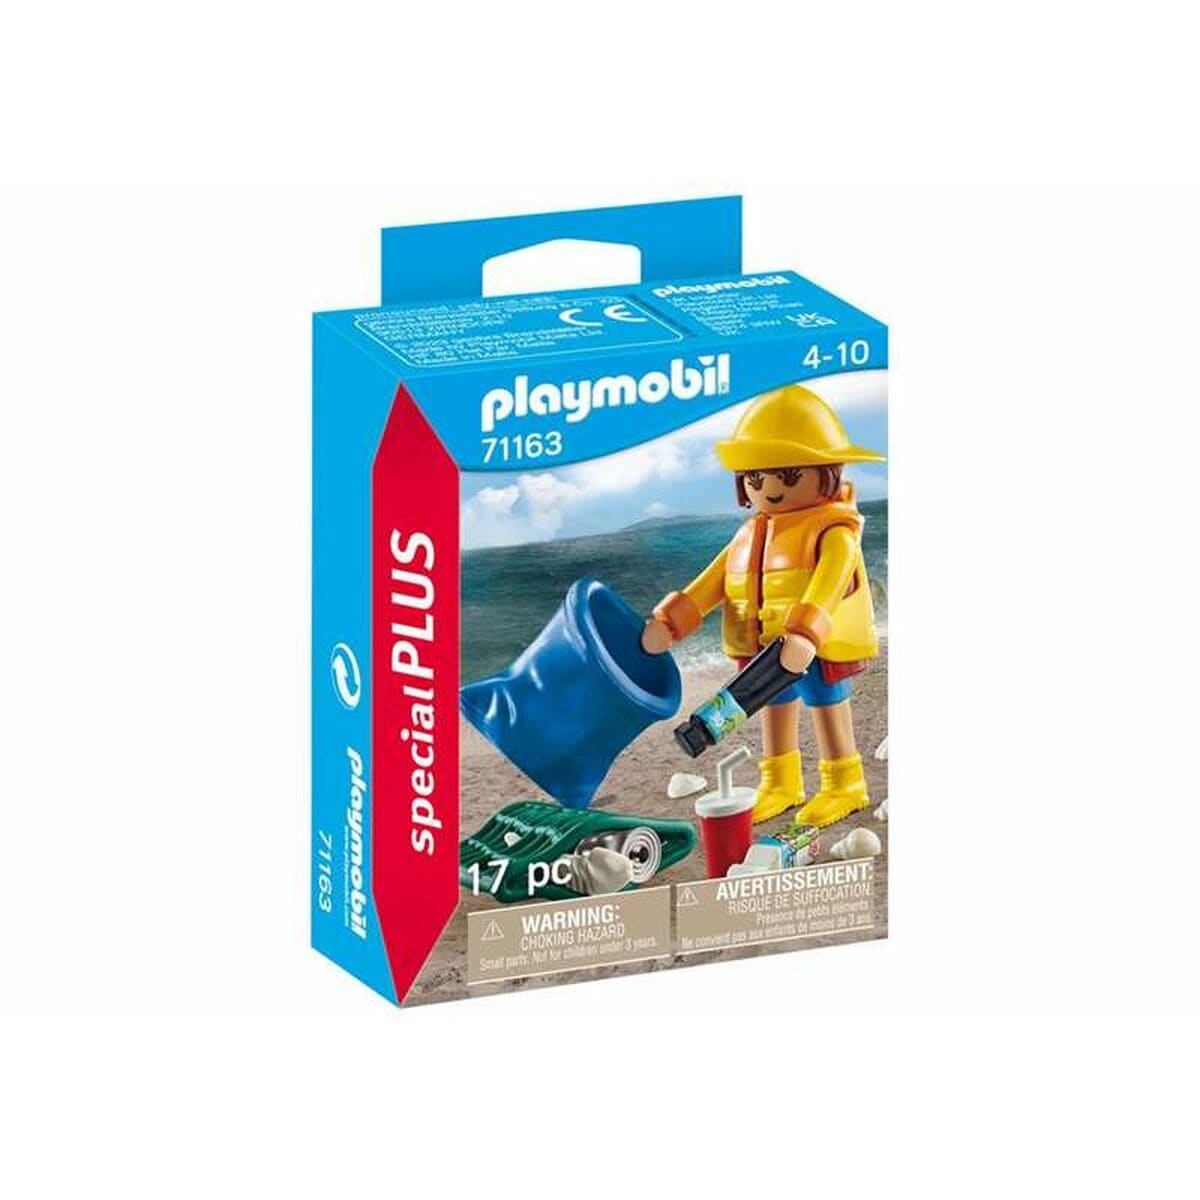 Playmobil Spielzeug | Kostüme > Spielzeug und Spiele > Weiteres spielzeug Playset Playmobil 71163 Special PLUS Ecologist 17 Stücke